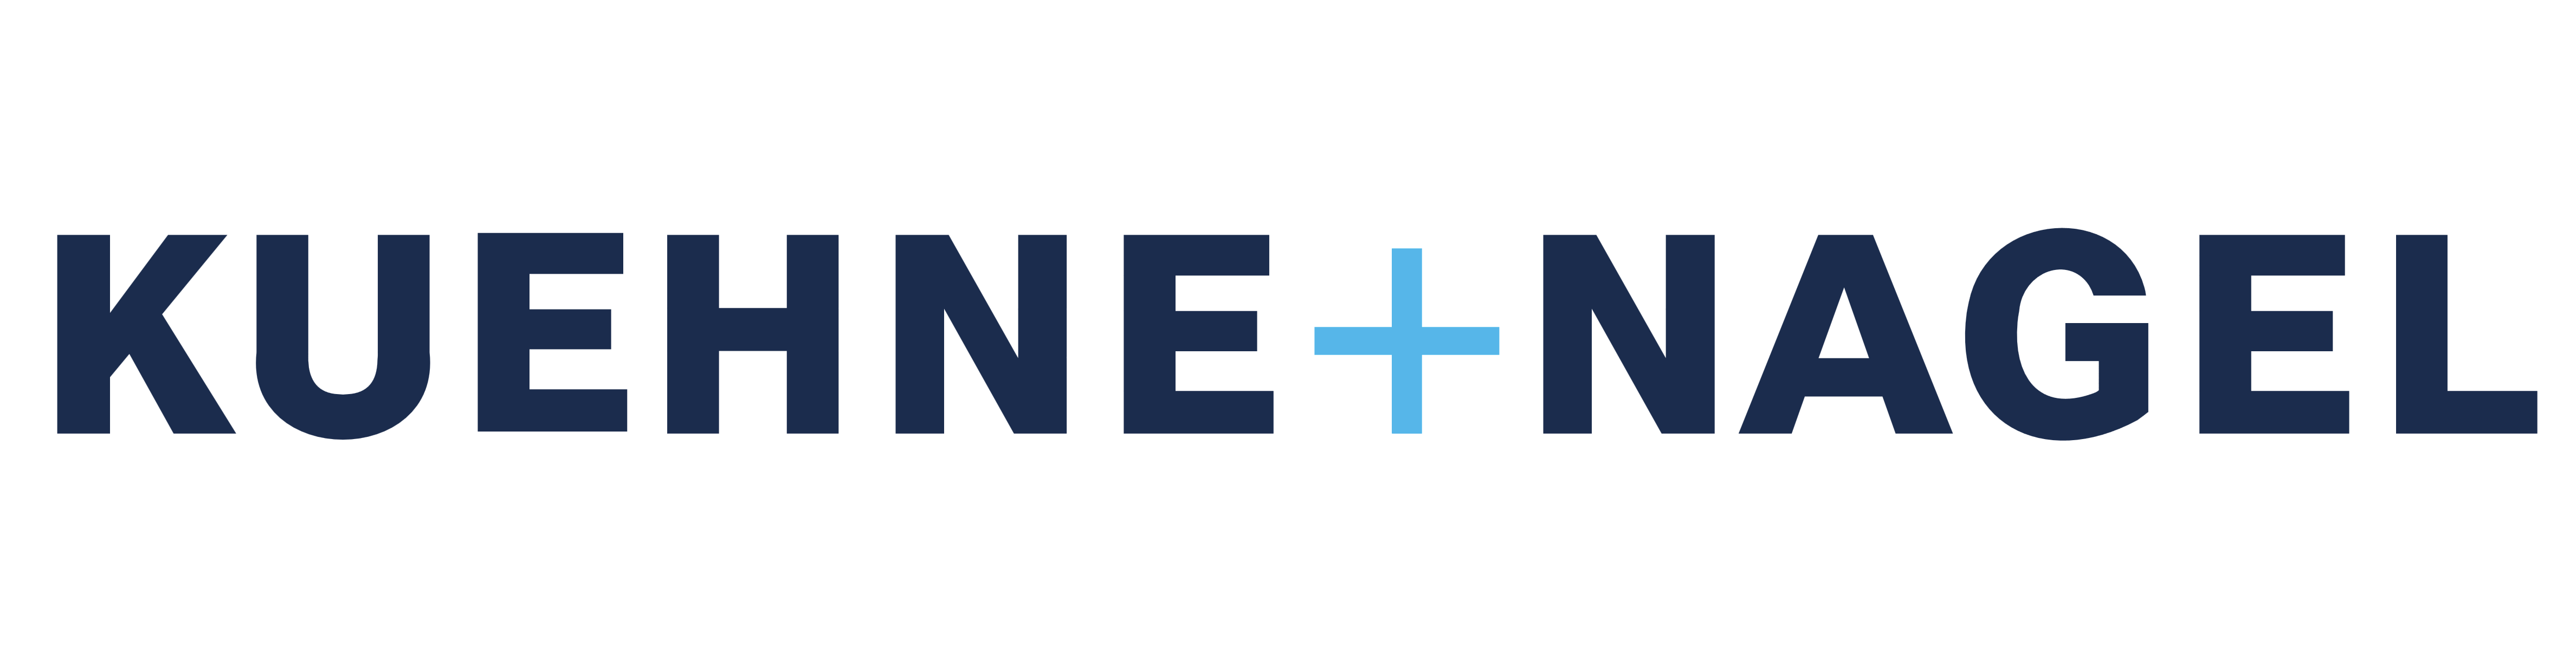 Kuehne + Nagel logo, logotype